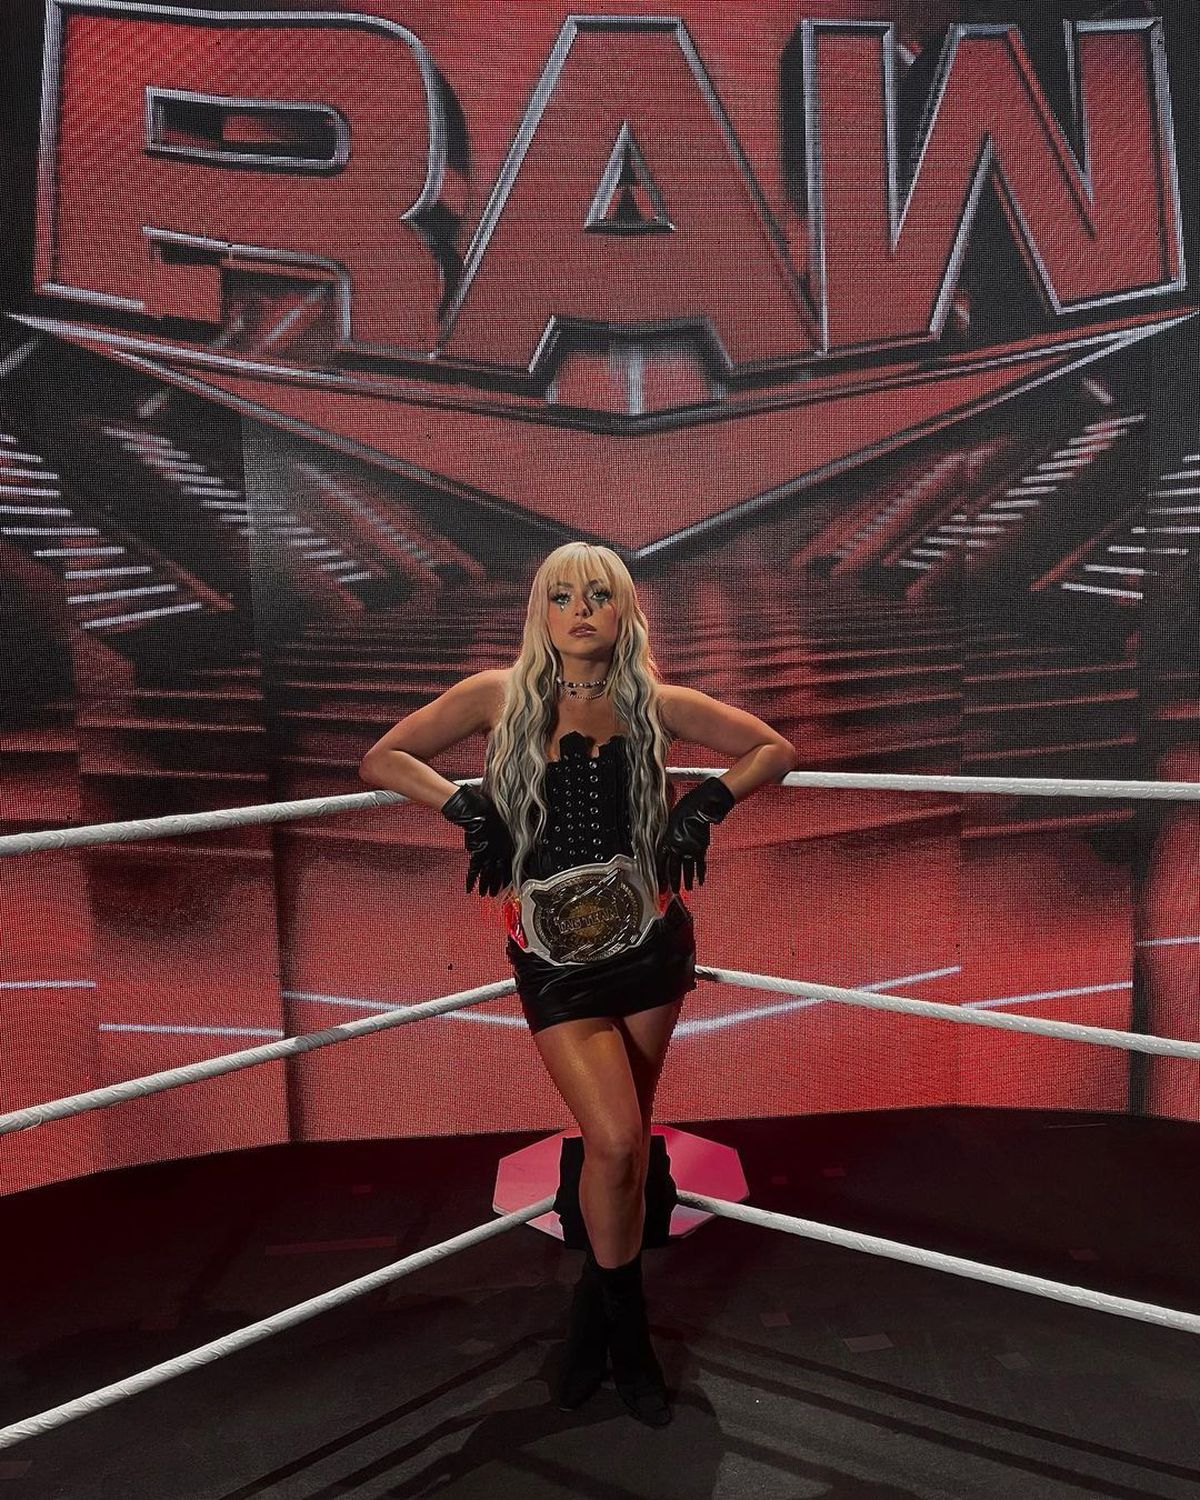 Reținută de poliție » Liv Morgan face senzație în WWE, dar acum are probleme cu legea